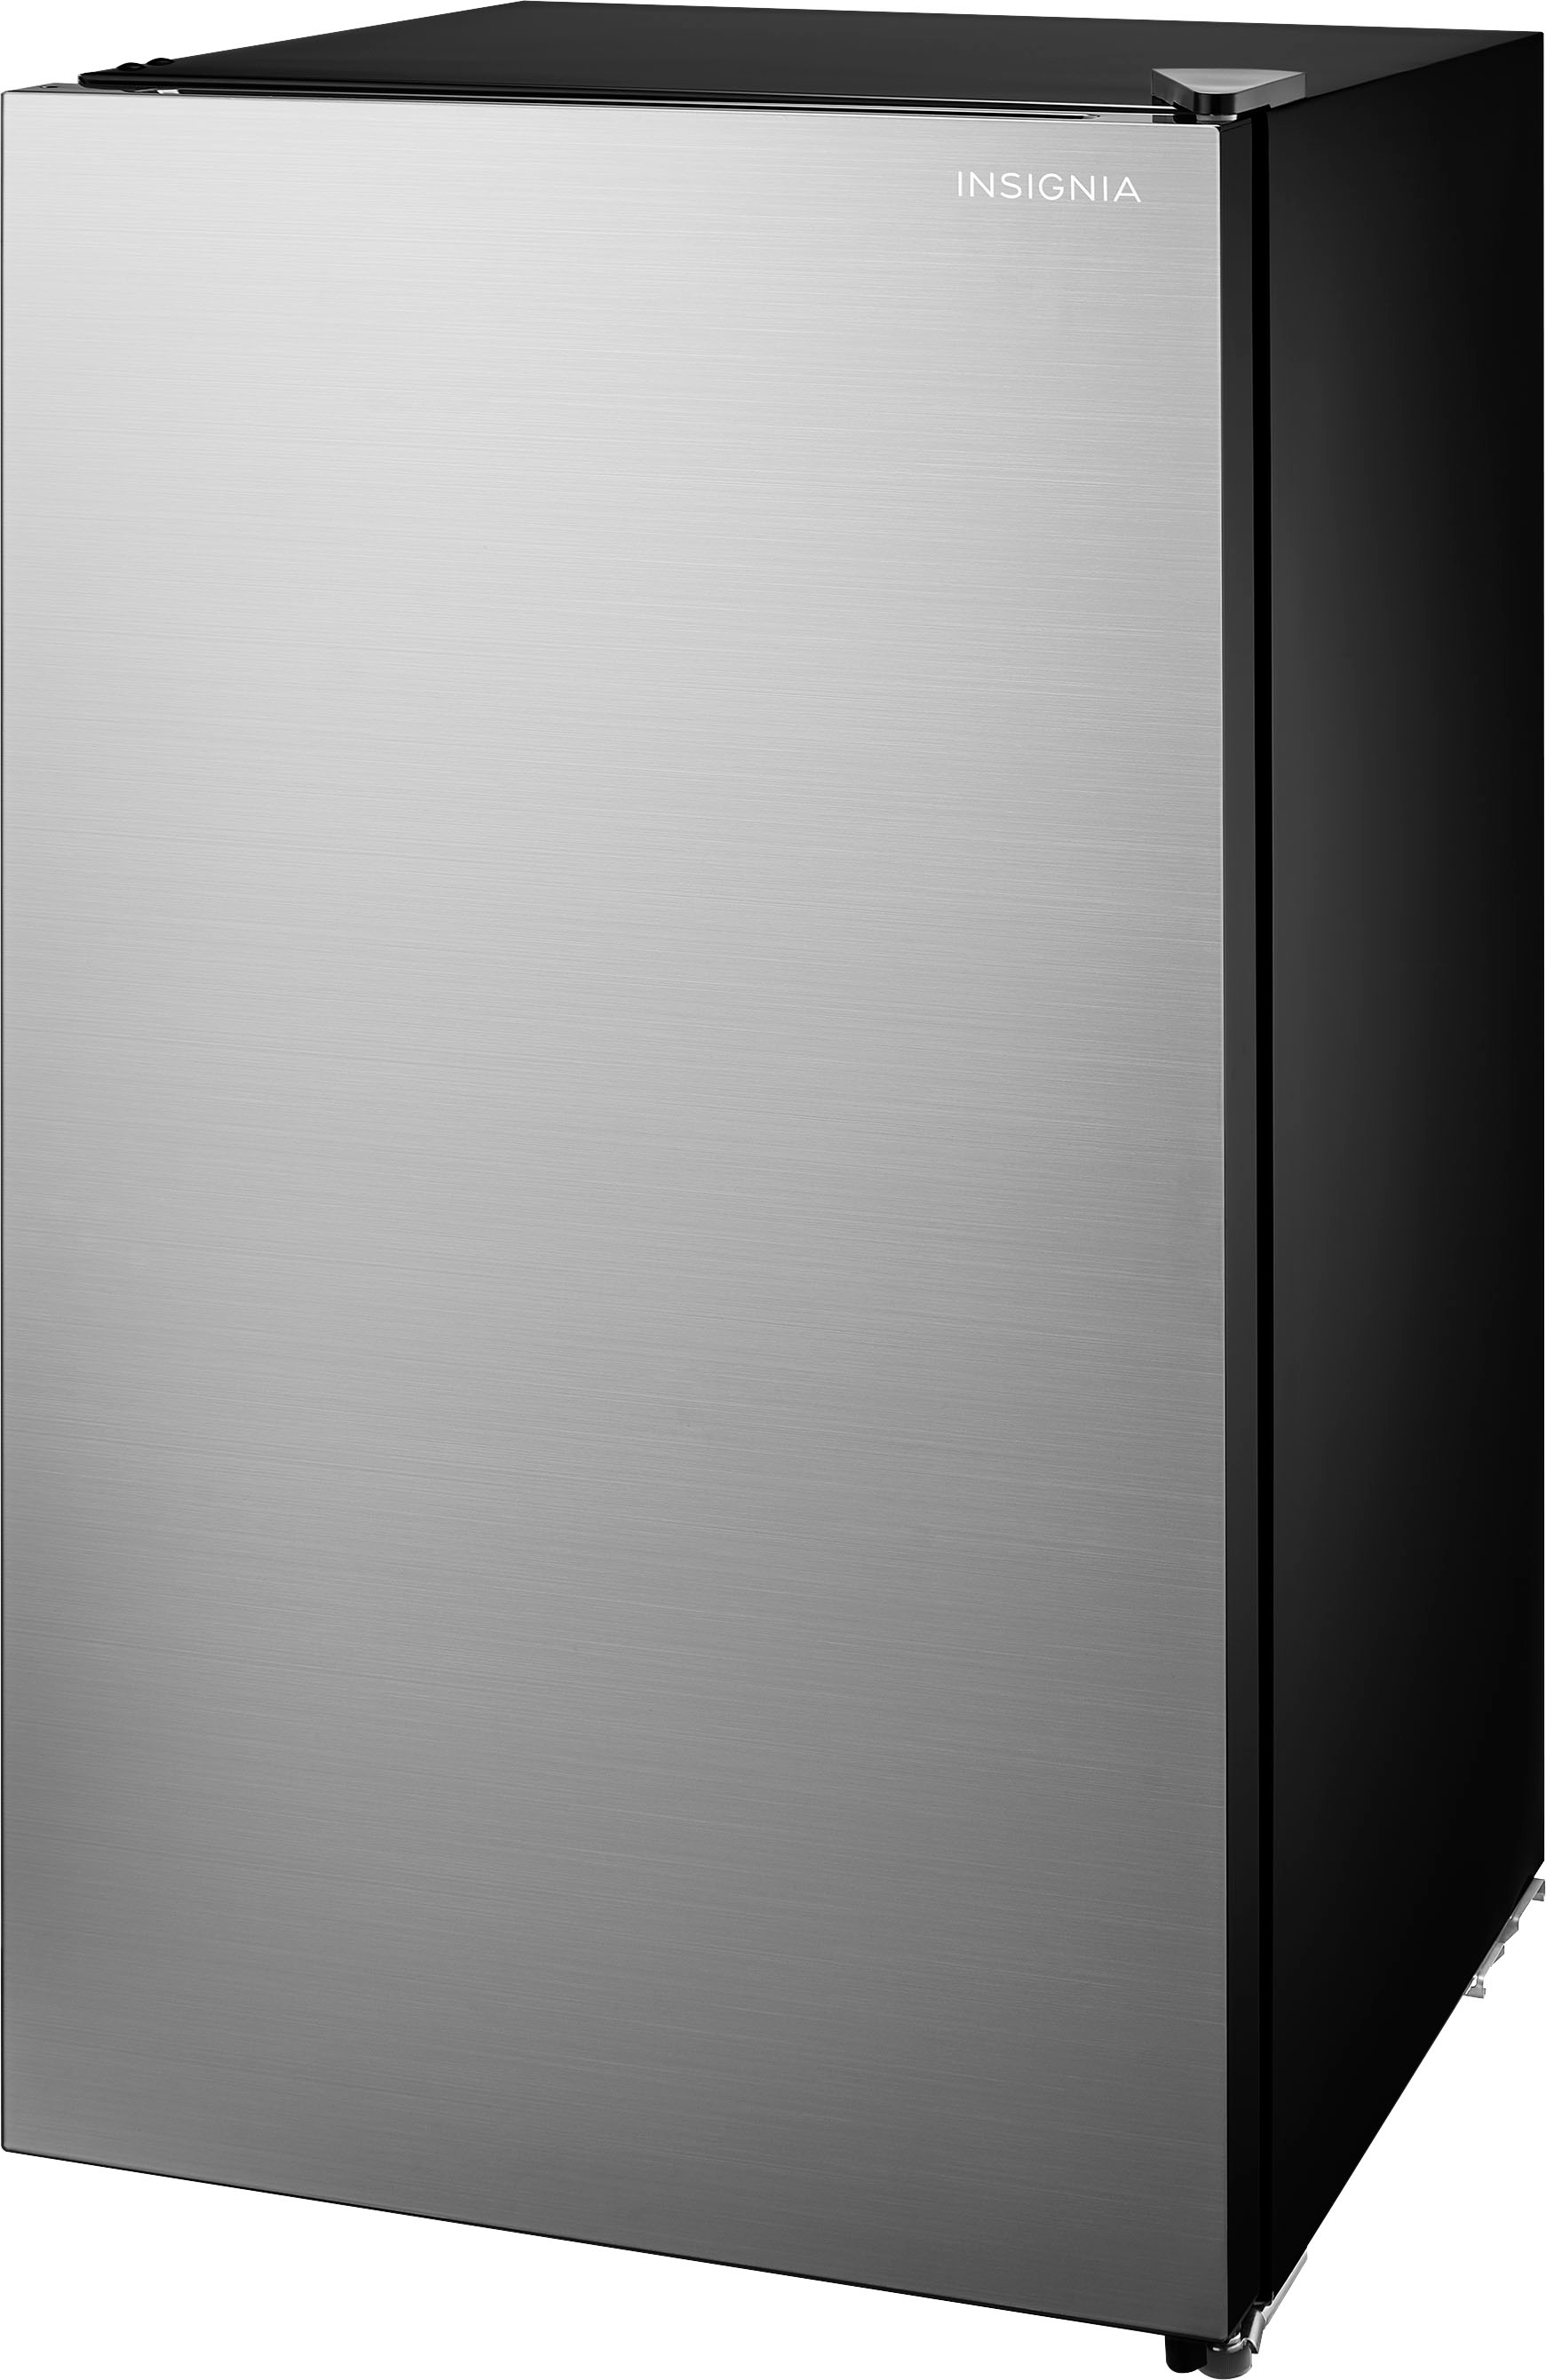 Left View: Whirlpool - 3.1 Cu. Ft. Mini Fridge With Dual Door True Freezer - Silver